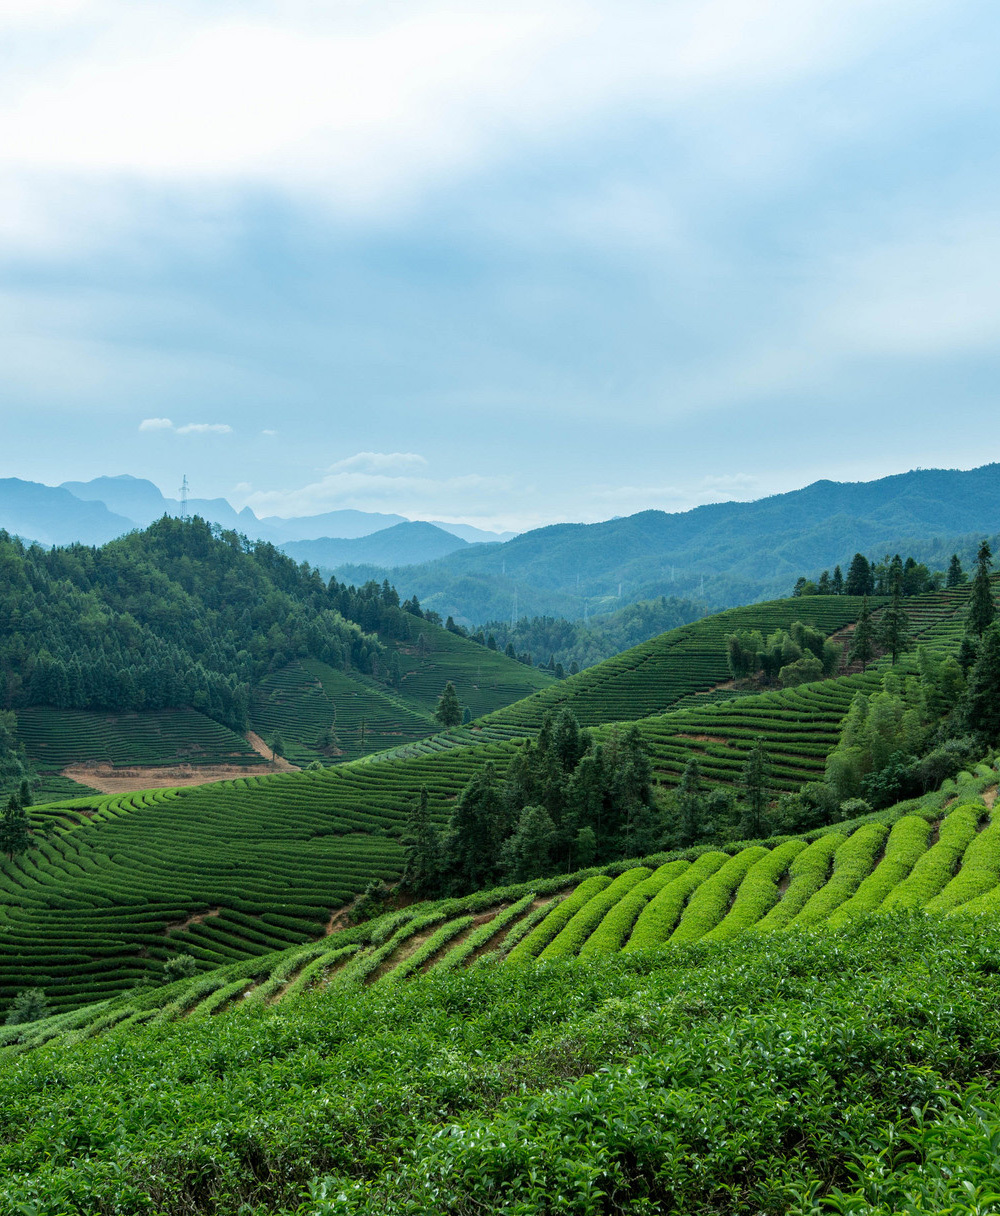 工投茶产业发展有限责任公司